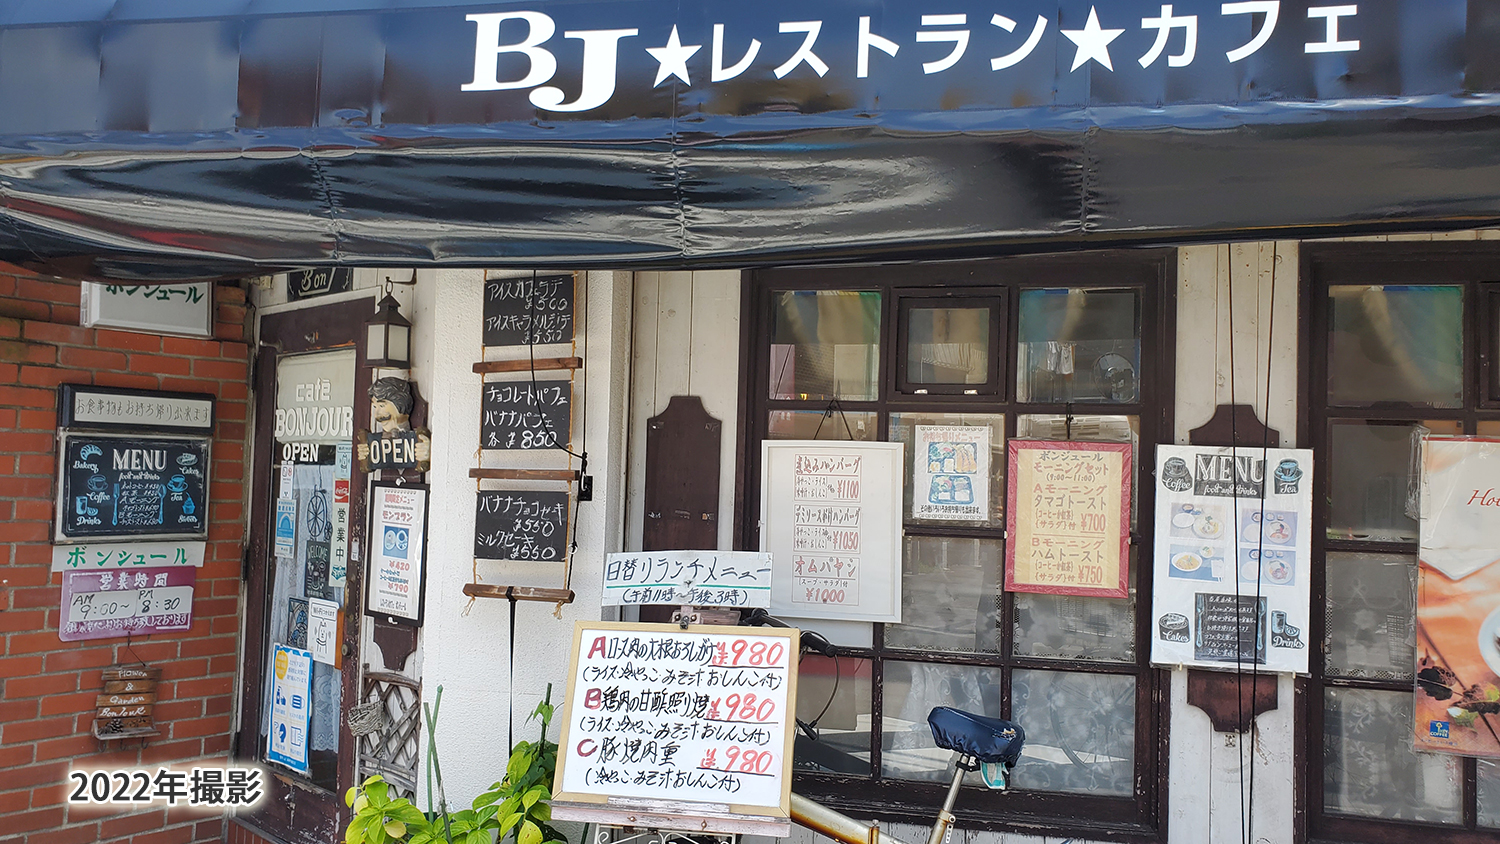 純喫茶店ボンジュールランチディナー食事軽食